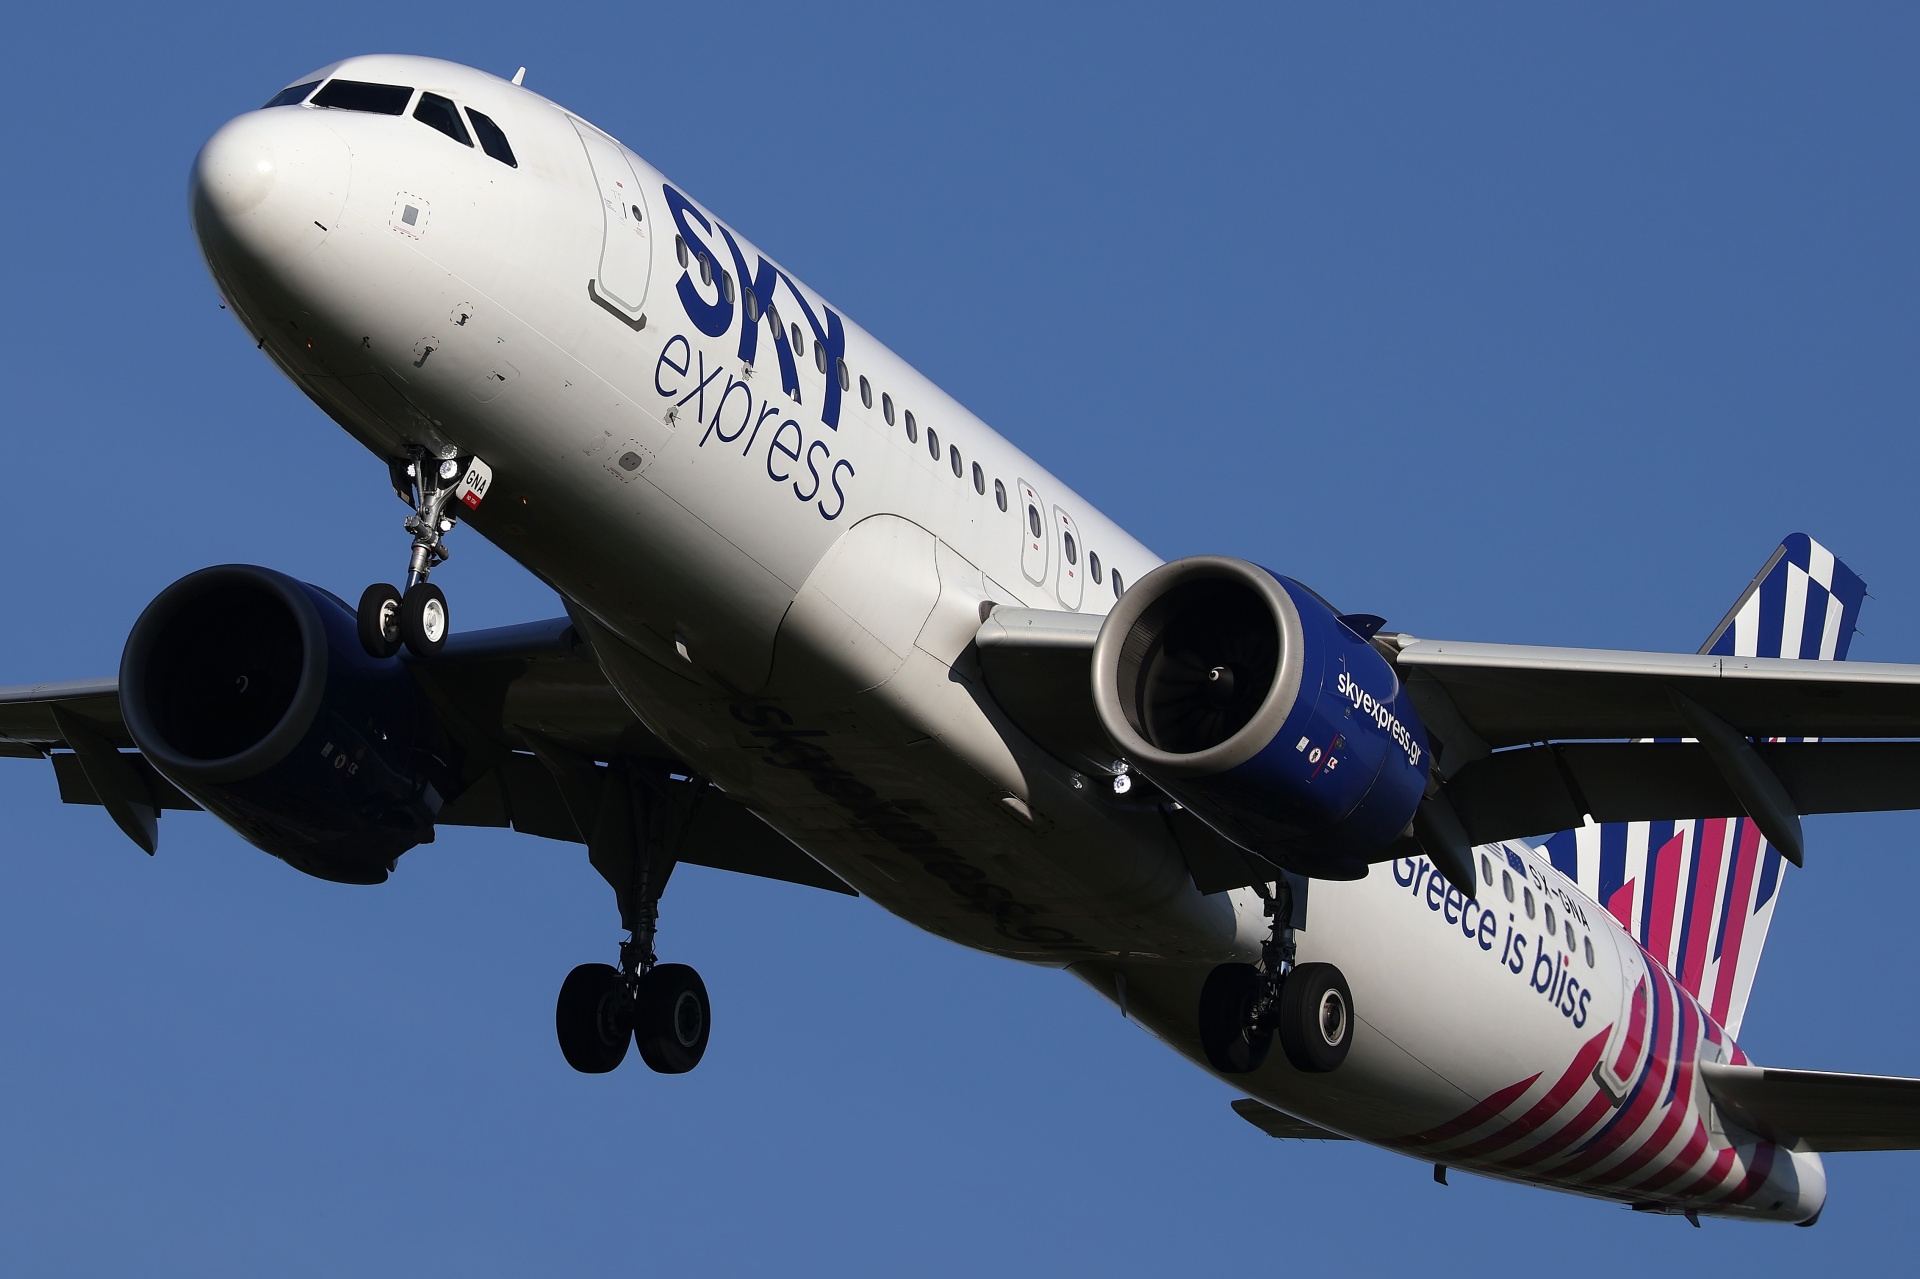 SX-GNA (Samoloty » Spotting na EPWA » Airbus A320neo » SKY Express)